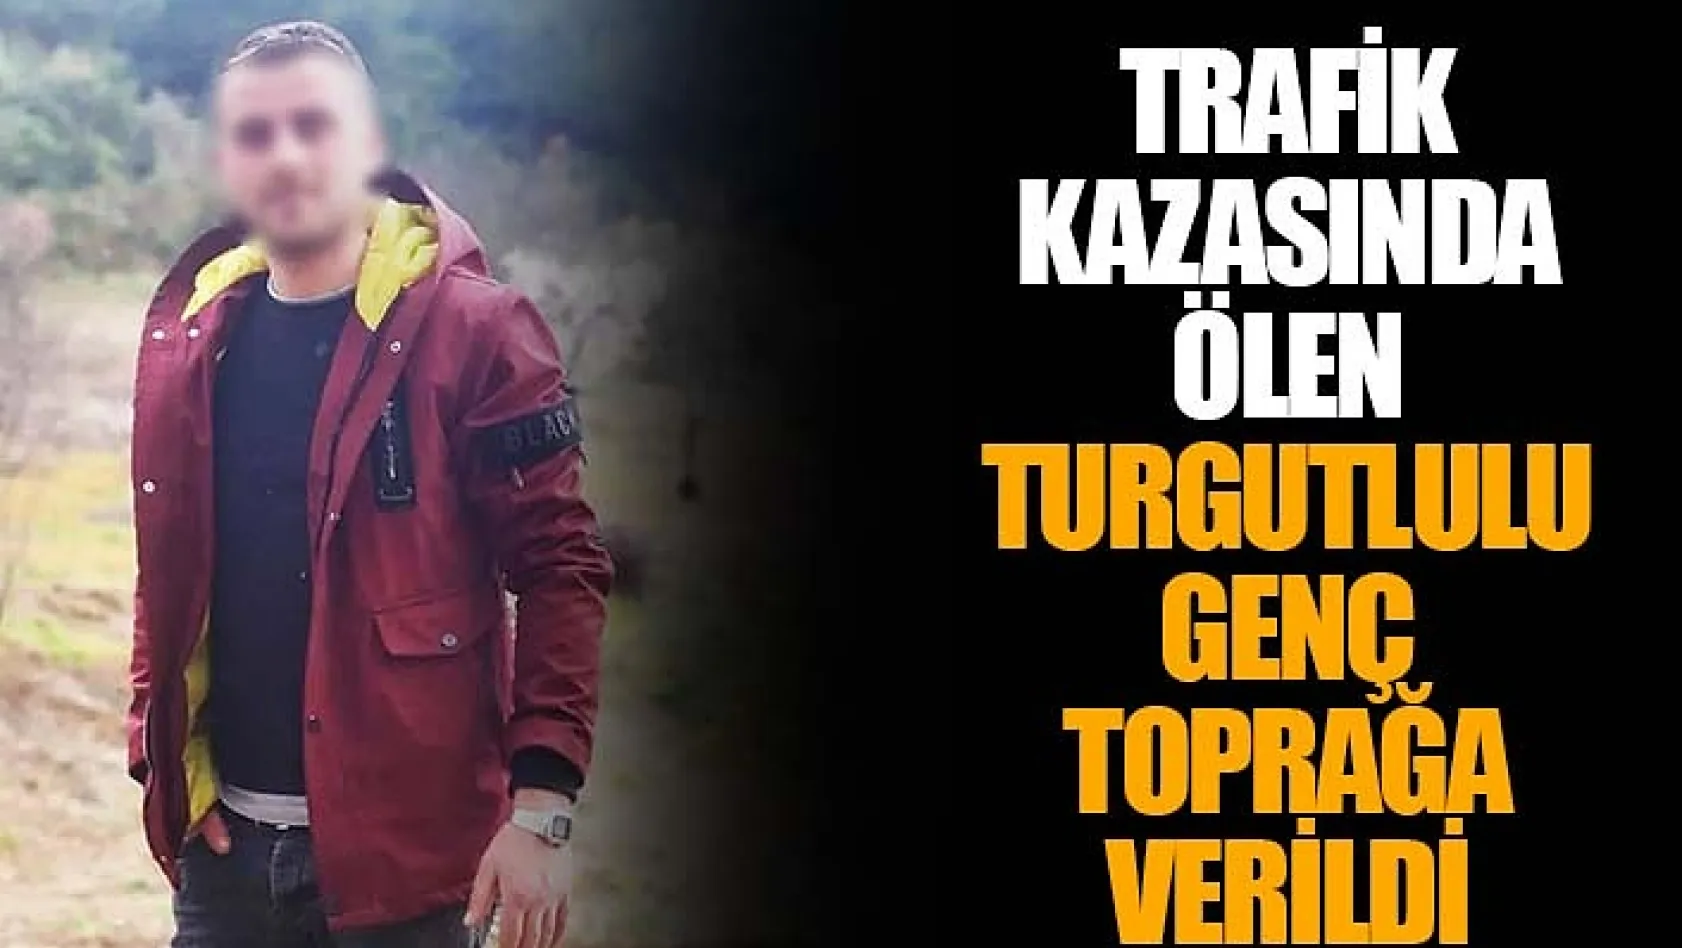 Trafik kazasında ölen Turgutlulu genç toprağa verildi